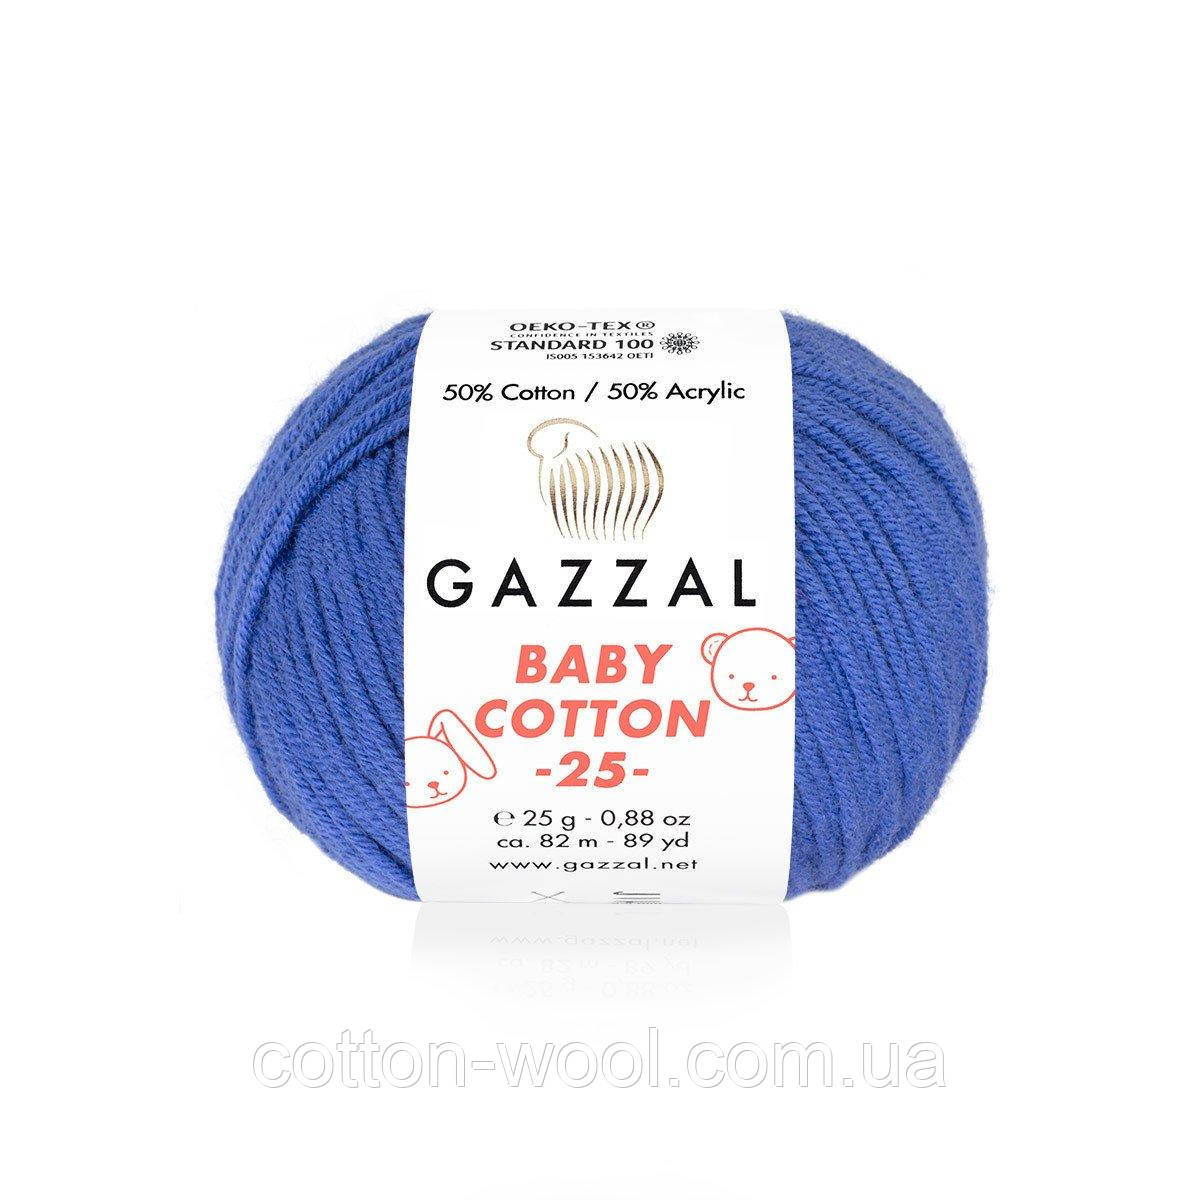 Gazzal Baby Cotton 25 (Бебі коттон 25) 3421